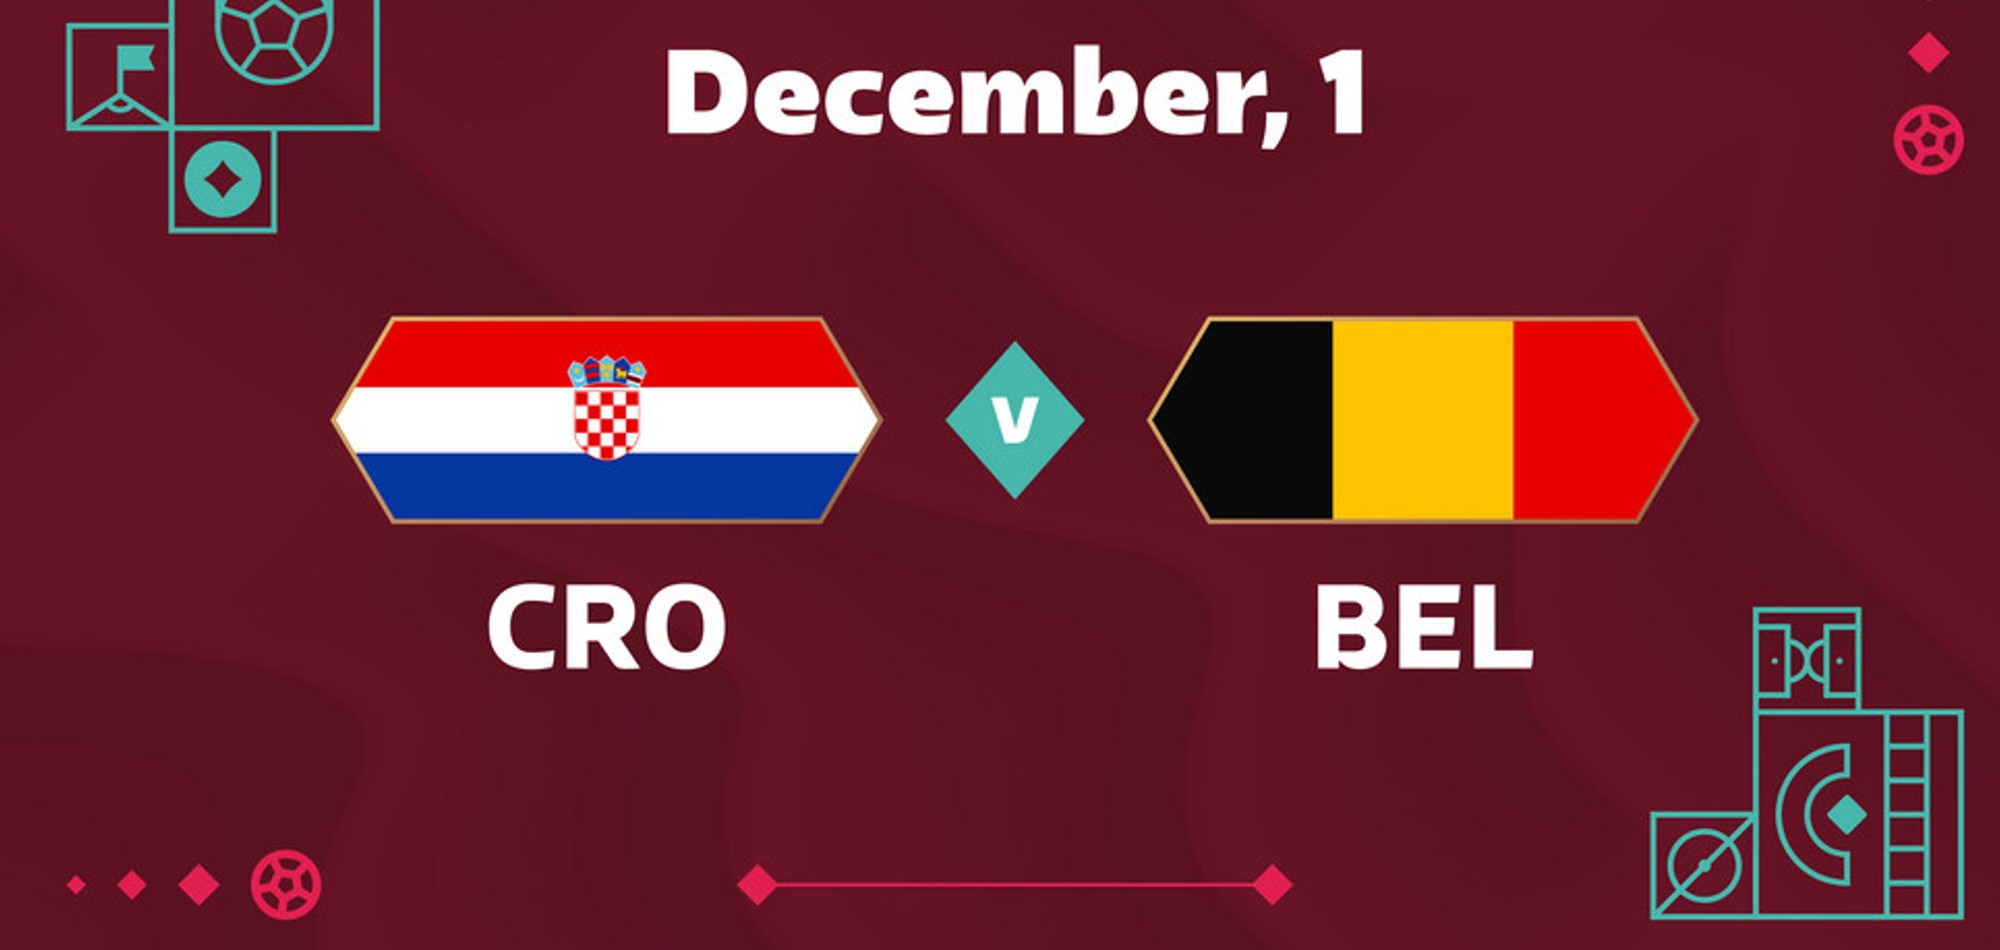 Croatia v Belgium Preview